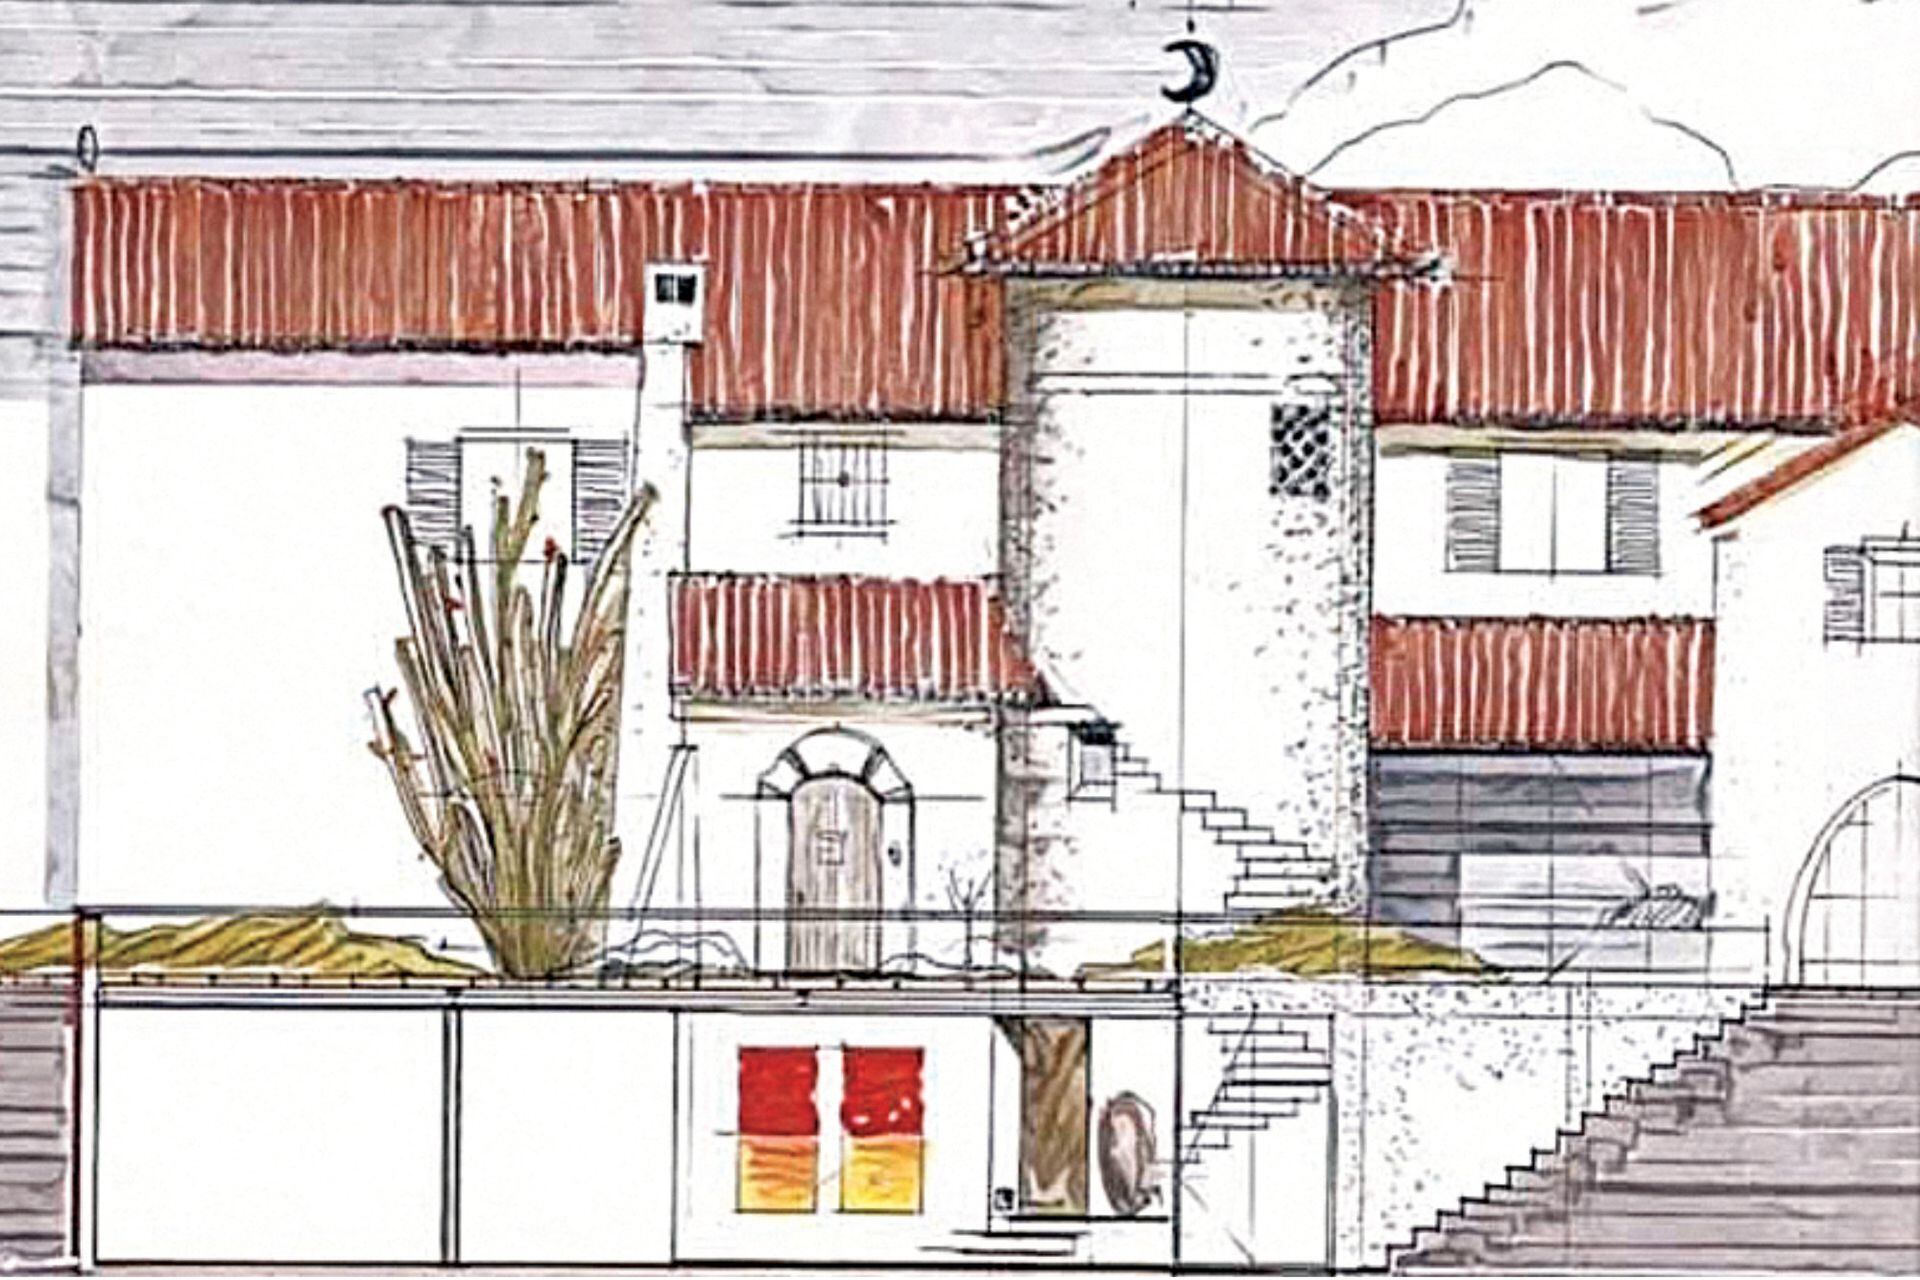 El boceto del arquitecto O'Connor muestra el corte longitudinal del proyecto. 